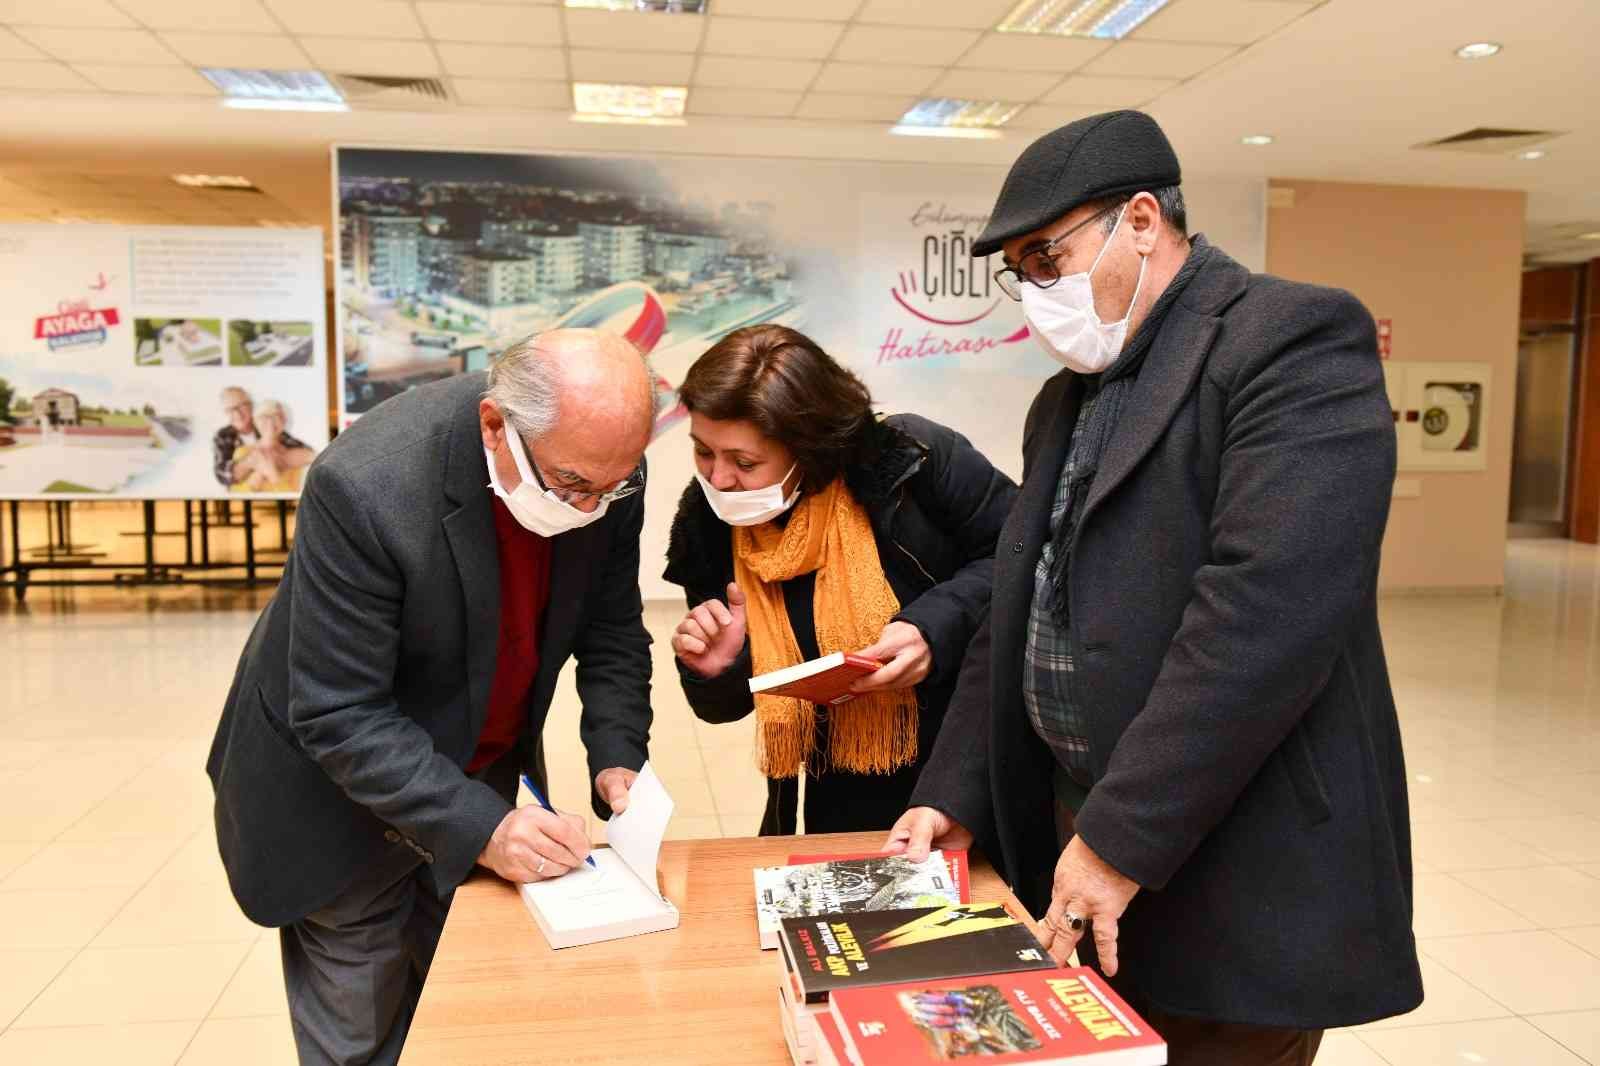 Çiğlili edebiyatseverler Fakir Baykurt imza gecesinde buluştu #izmir